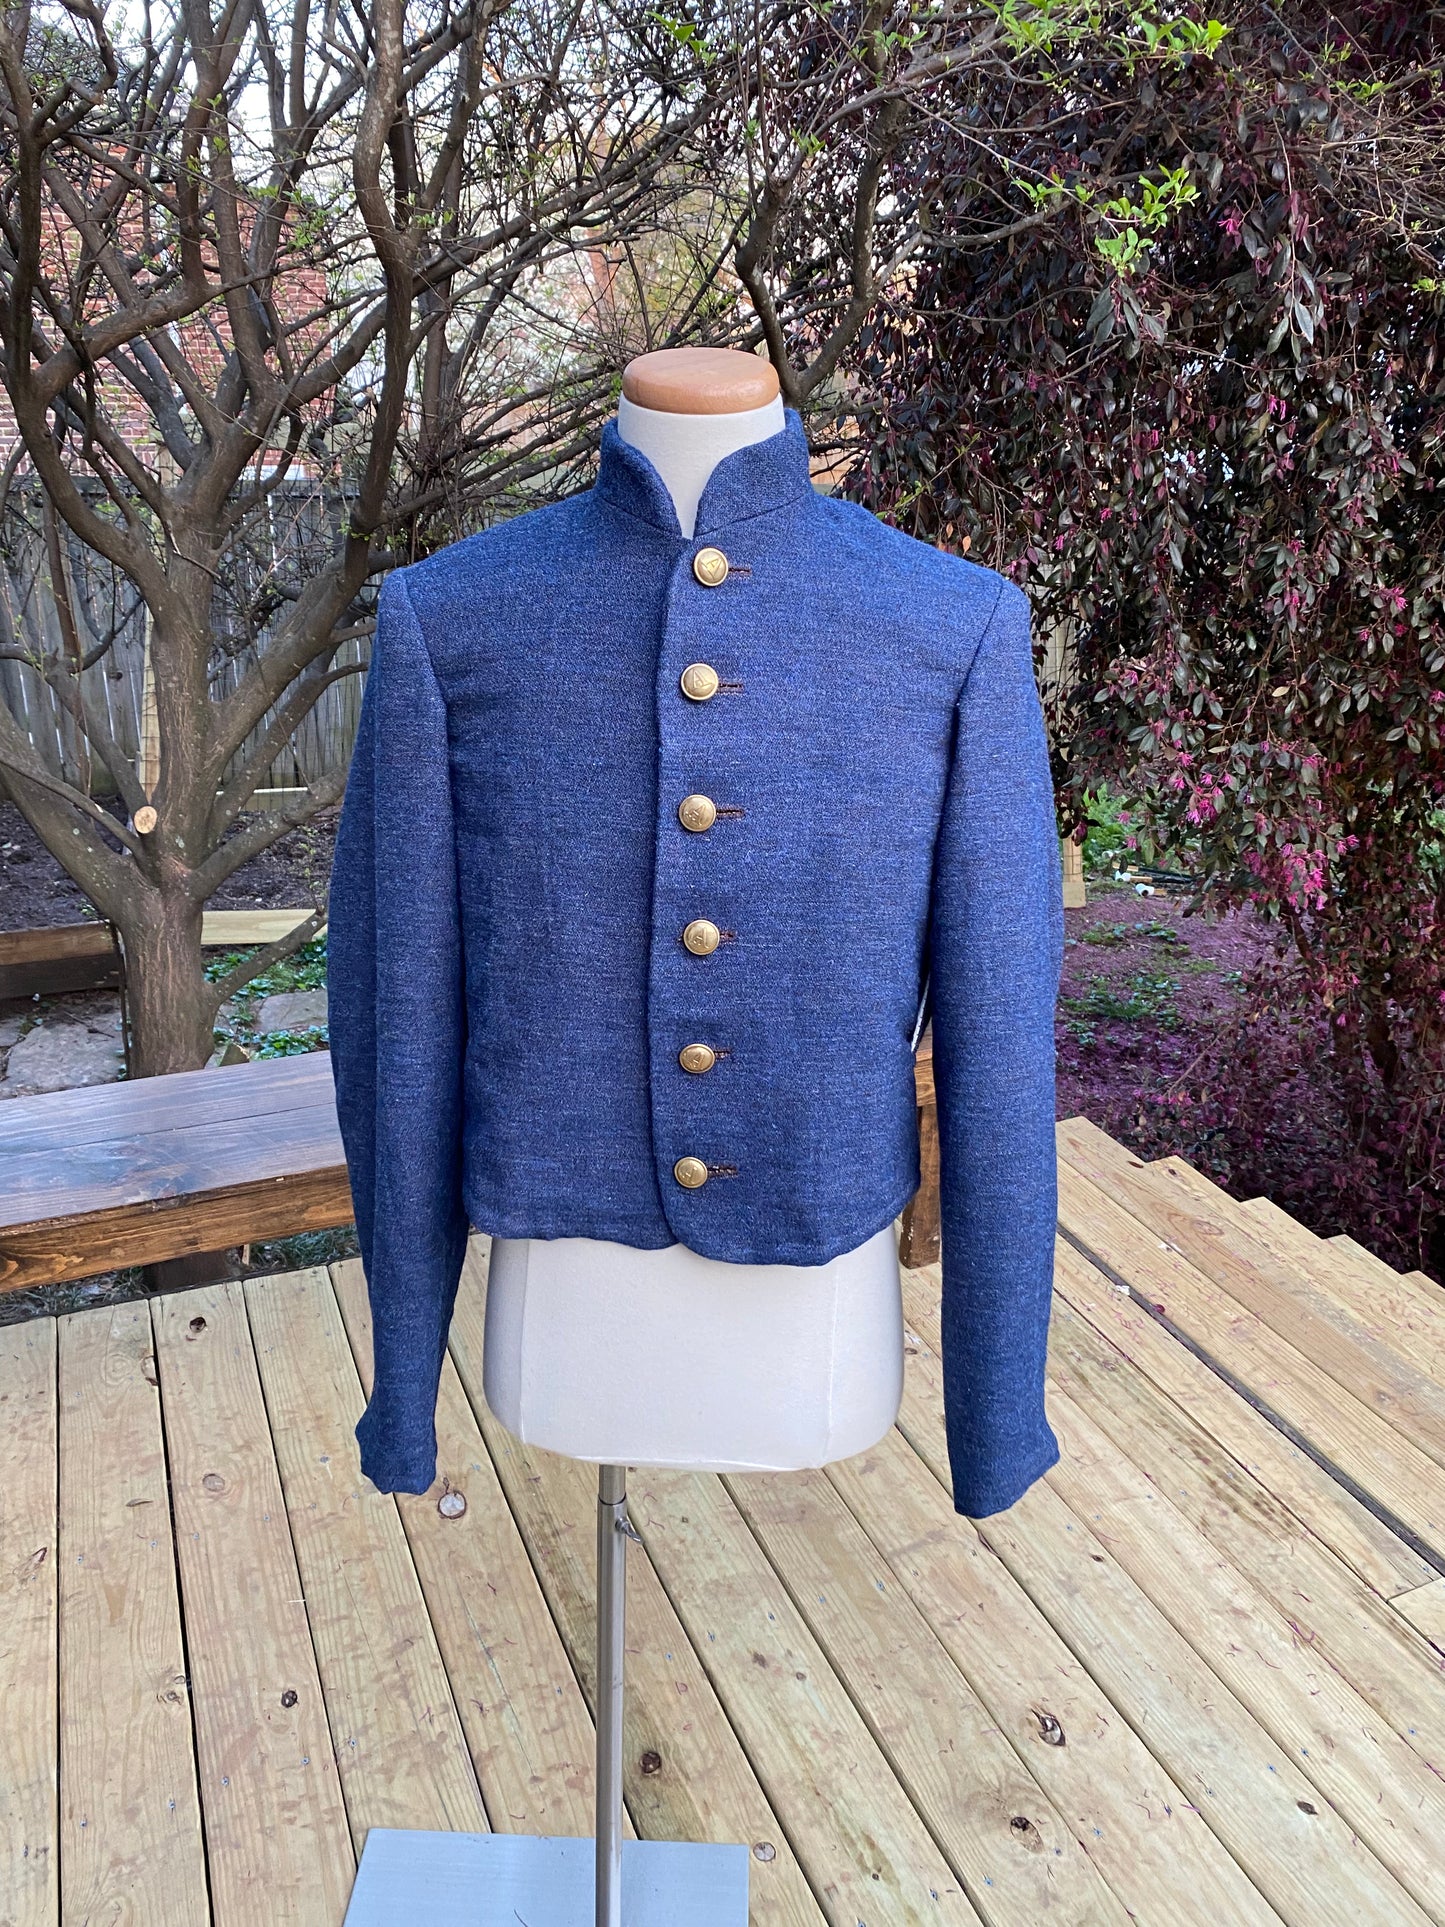 Augusta Depot Jacket - Blue/Gray Jean Variant